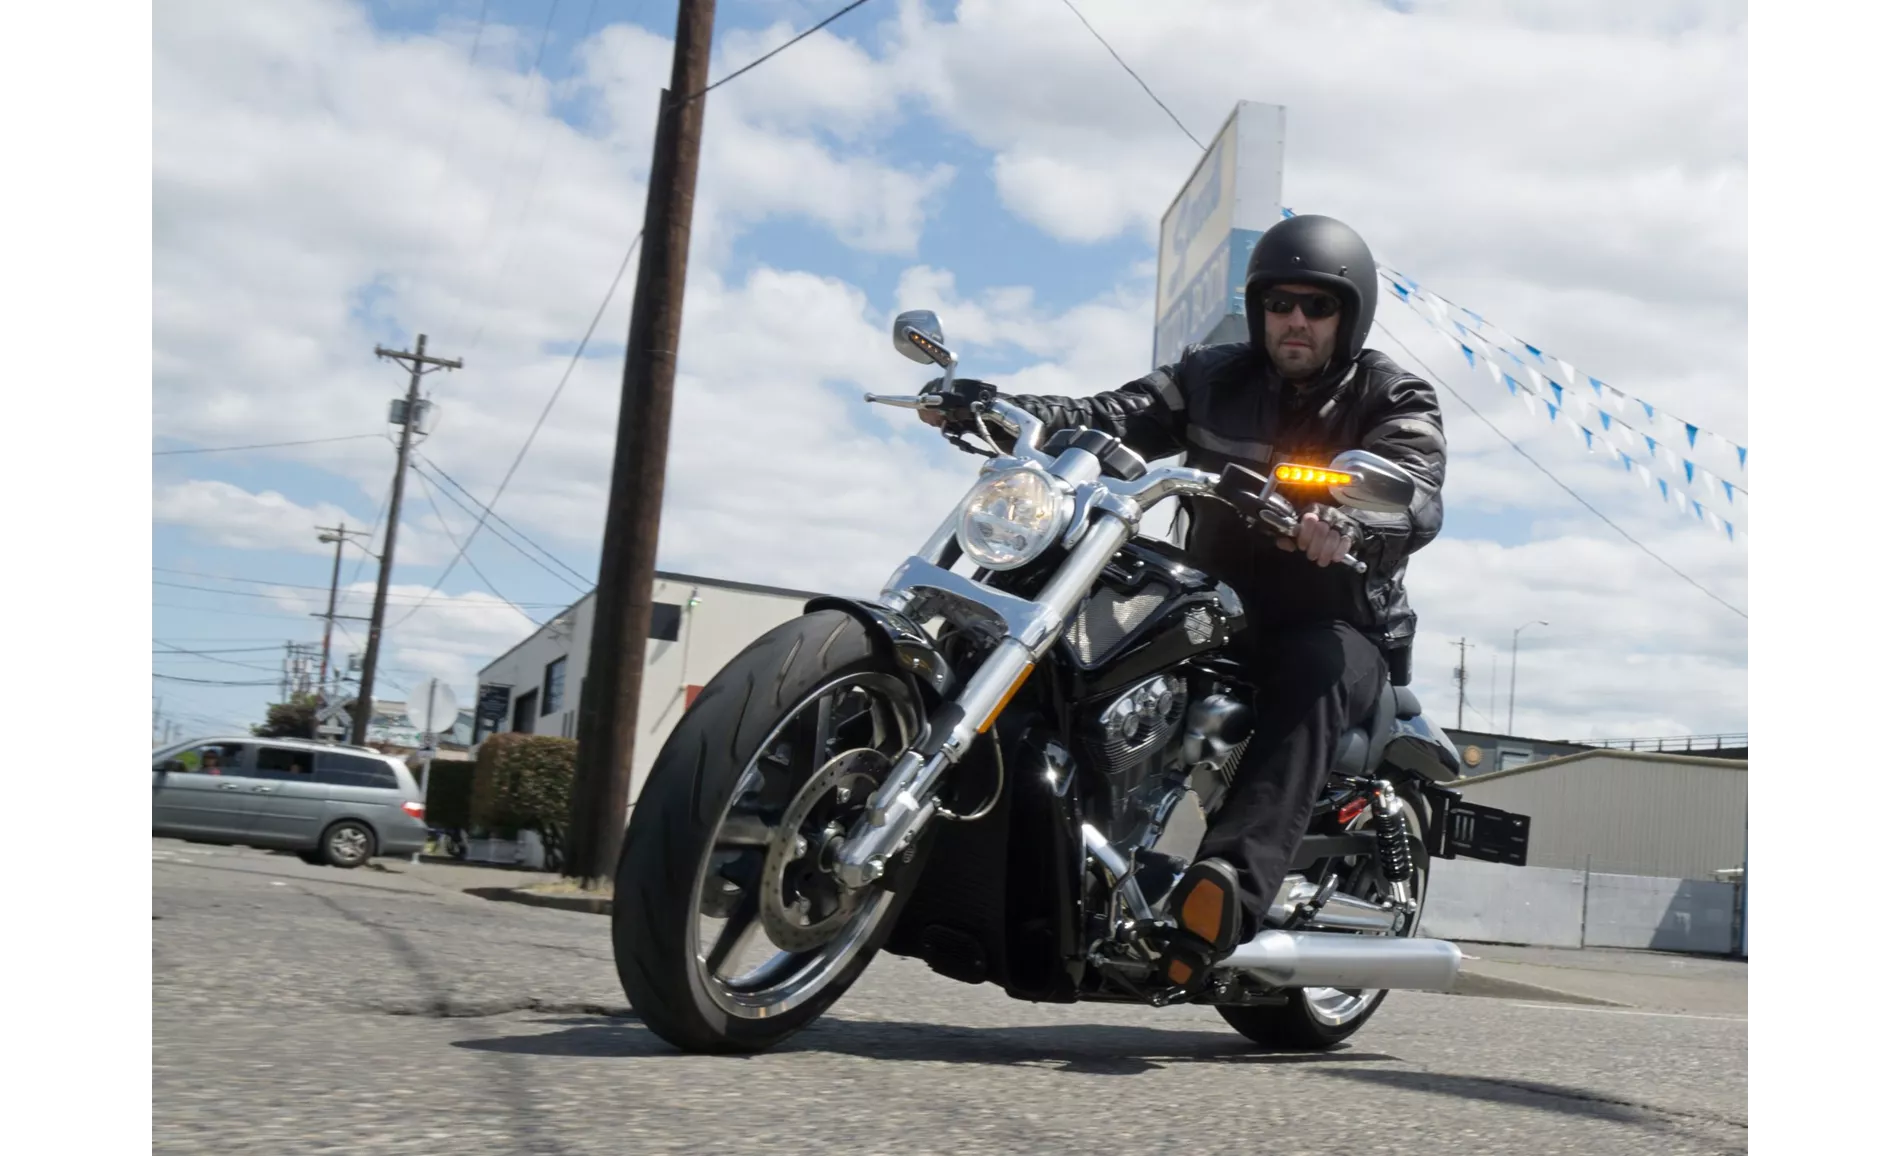 Harley-Davidson V-Rod Muscle VRSCF 2015